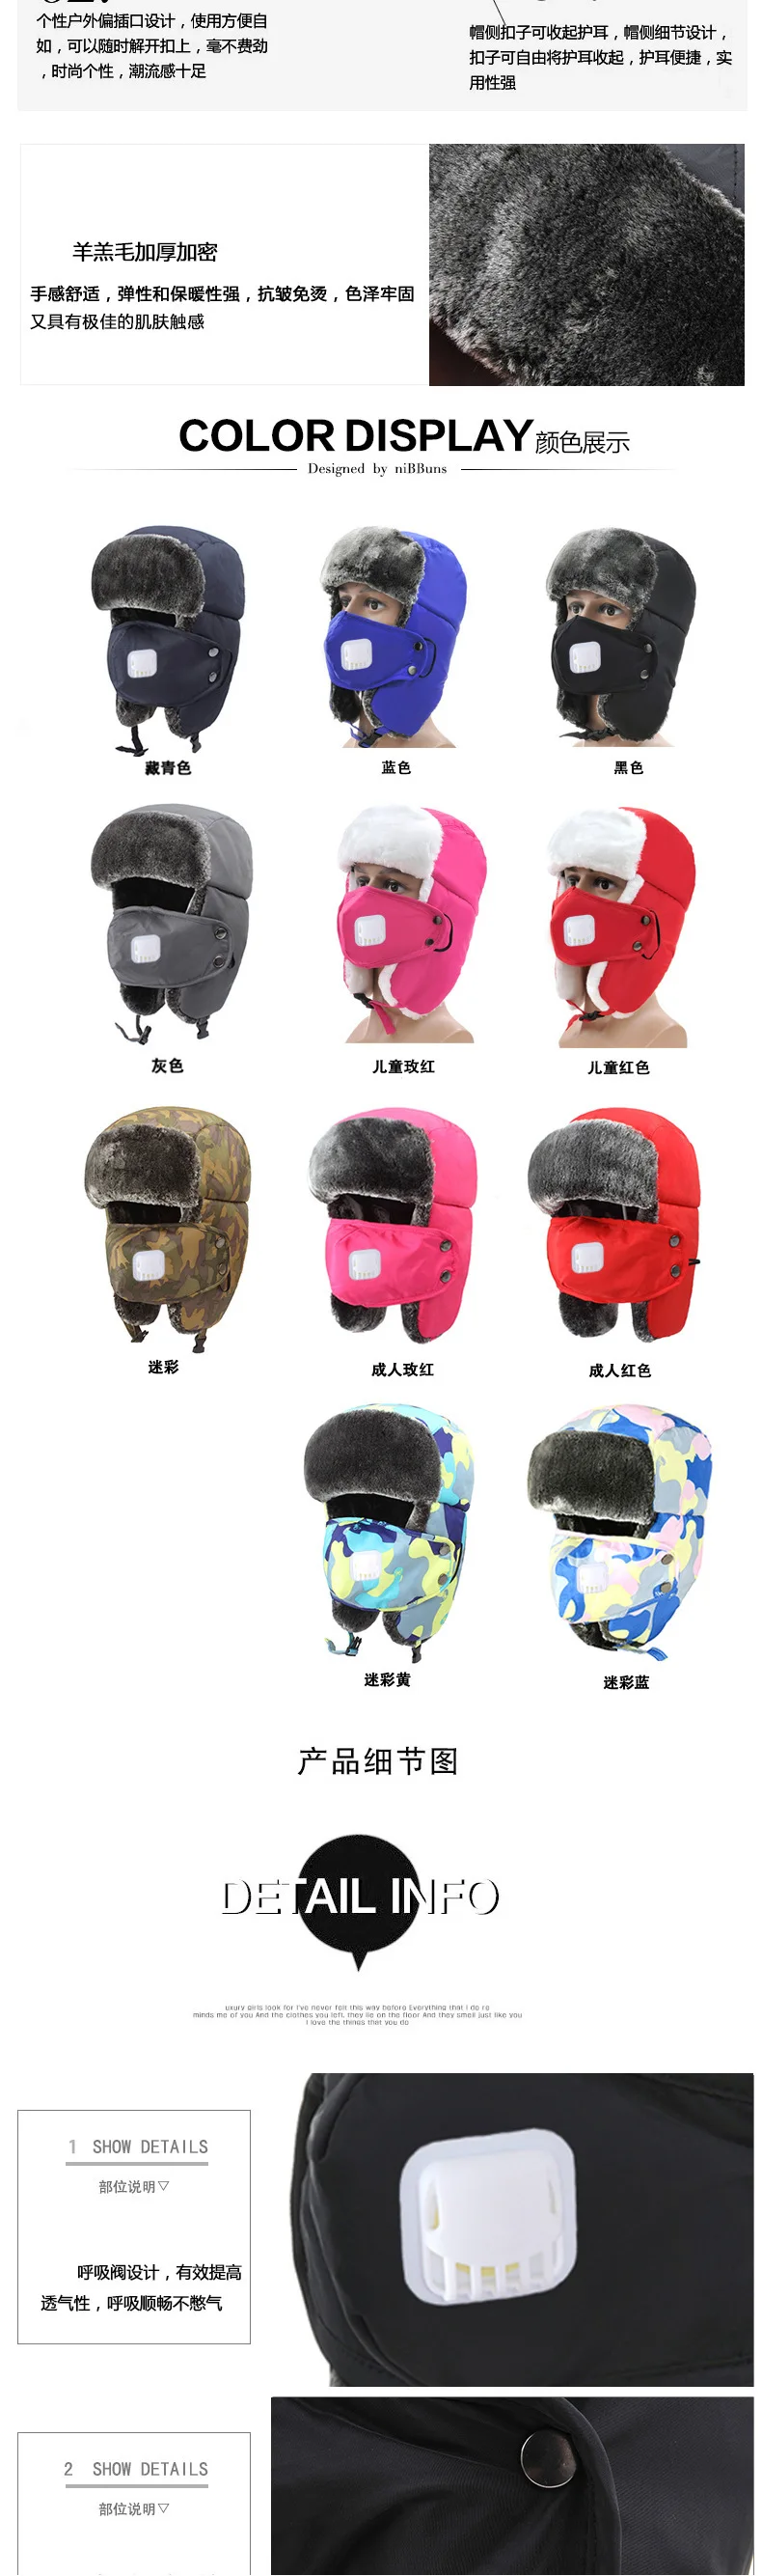 Новый шаблон Лэй Фэн шляпа зимой Лыжный Спорт maonannv любителей хлопка-проложенный Кепки Утепленная одежда воспитание детей шлема Шапки